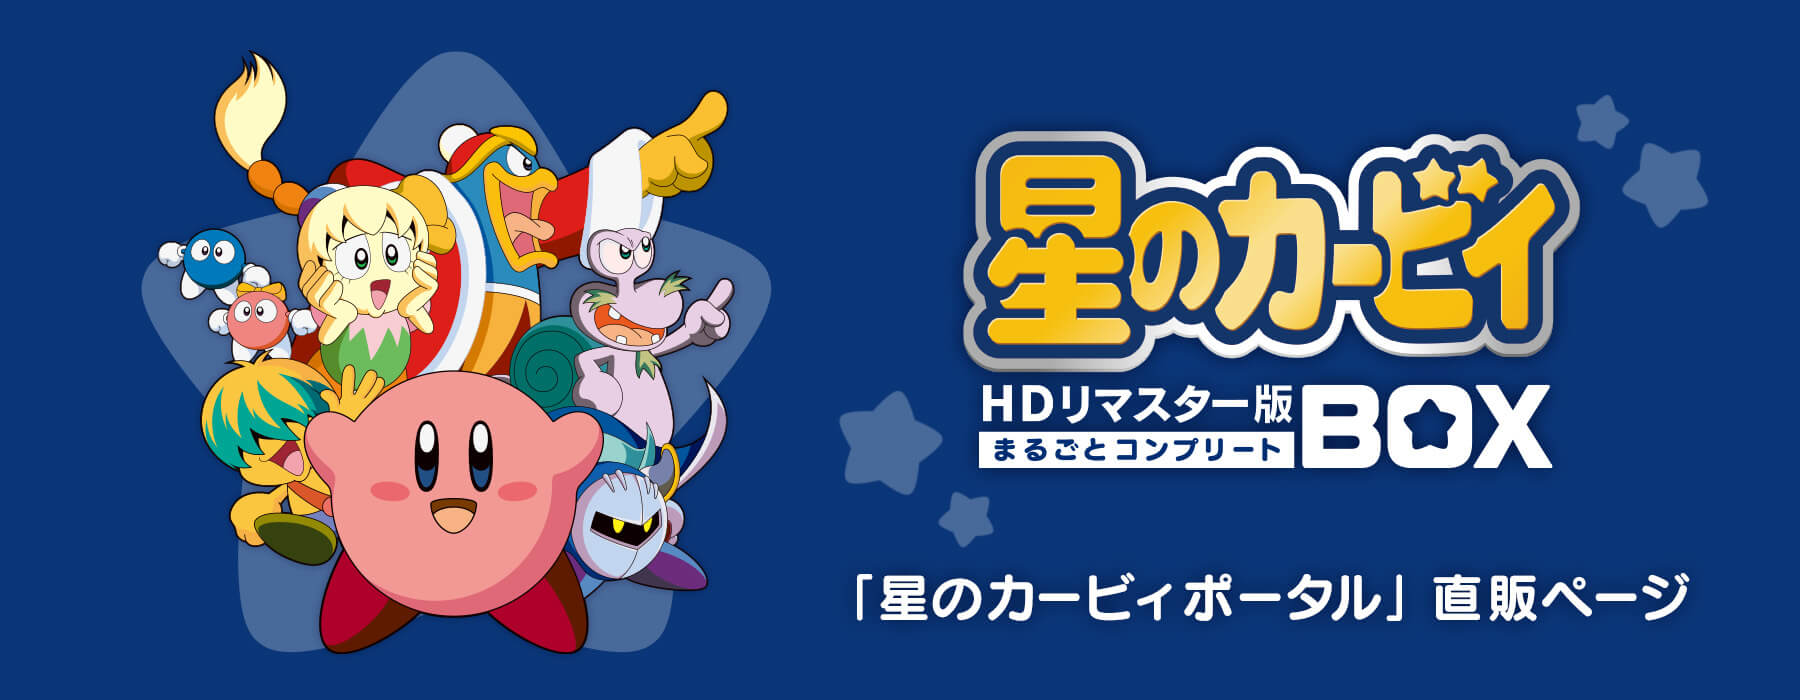 アニメ星のカービィ HDリマスター版Blu-raybox-